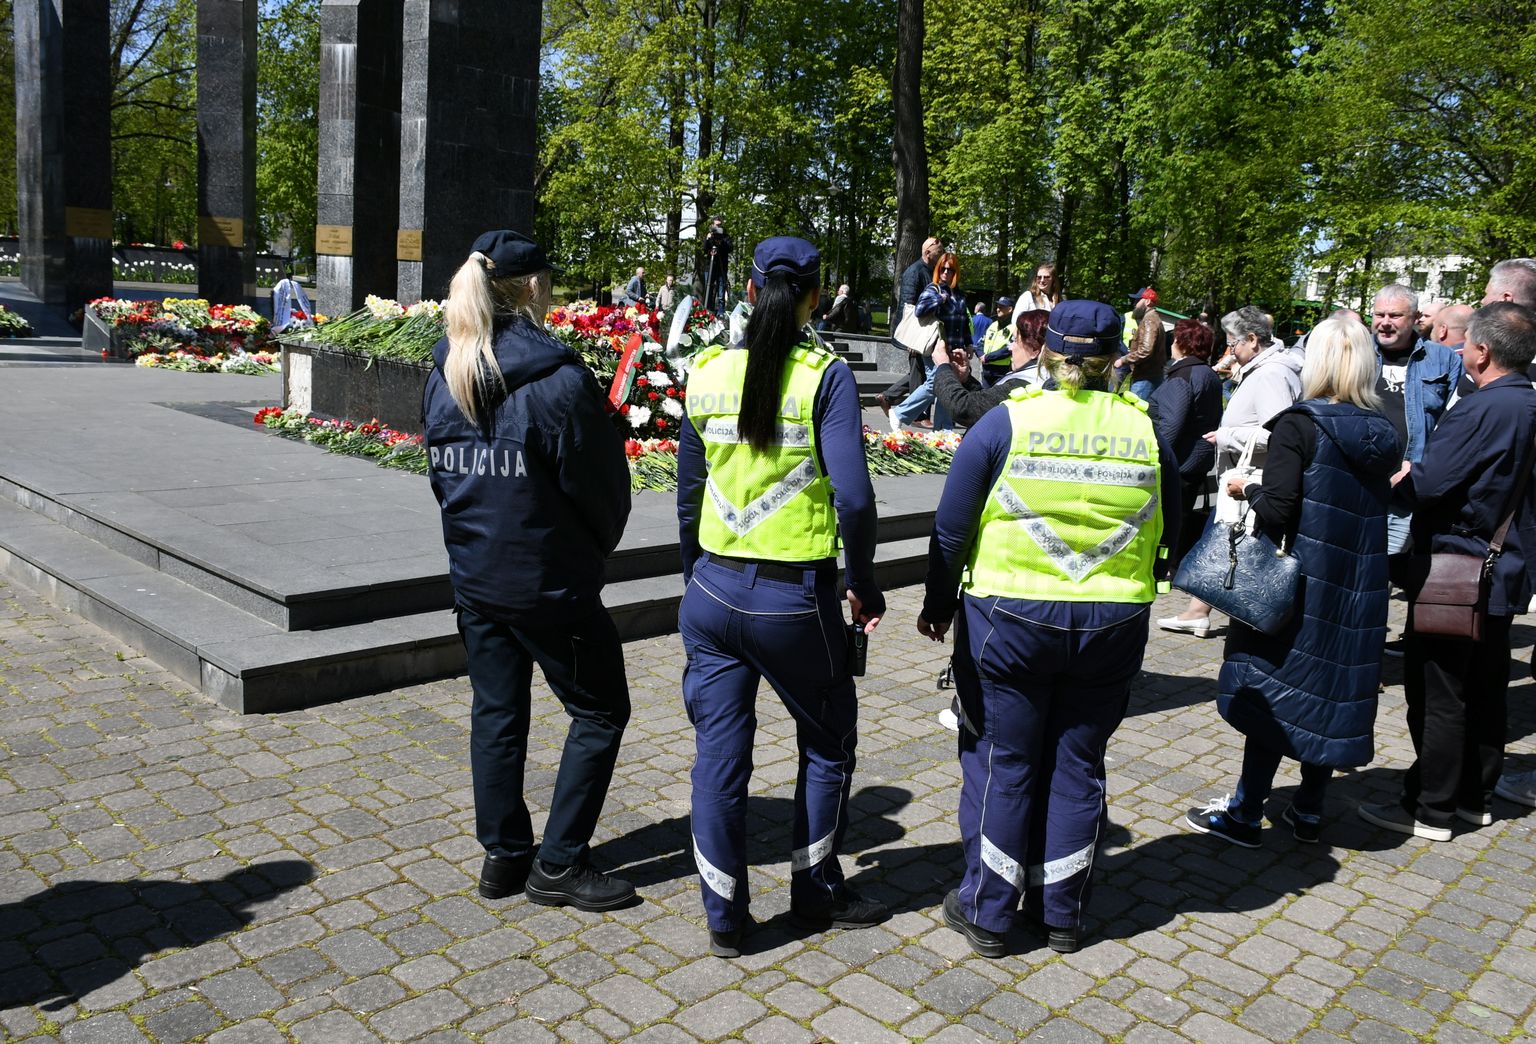 Pretēji aizliegumam 9. maijā rīkot publiskus svētku pasākumus un gājienus, cilvēki ieradušies nolikt ziedus pie mūžīgās uguns Dubrovina parkā Daugavpilī.